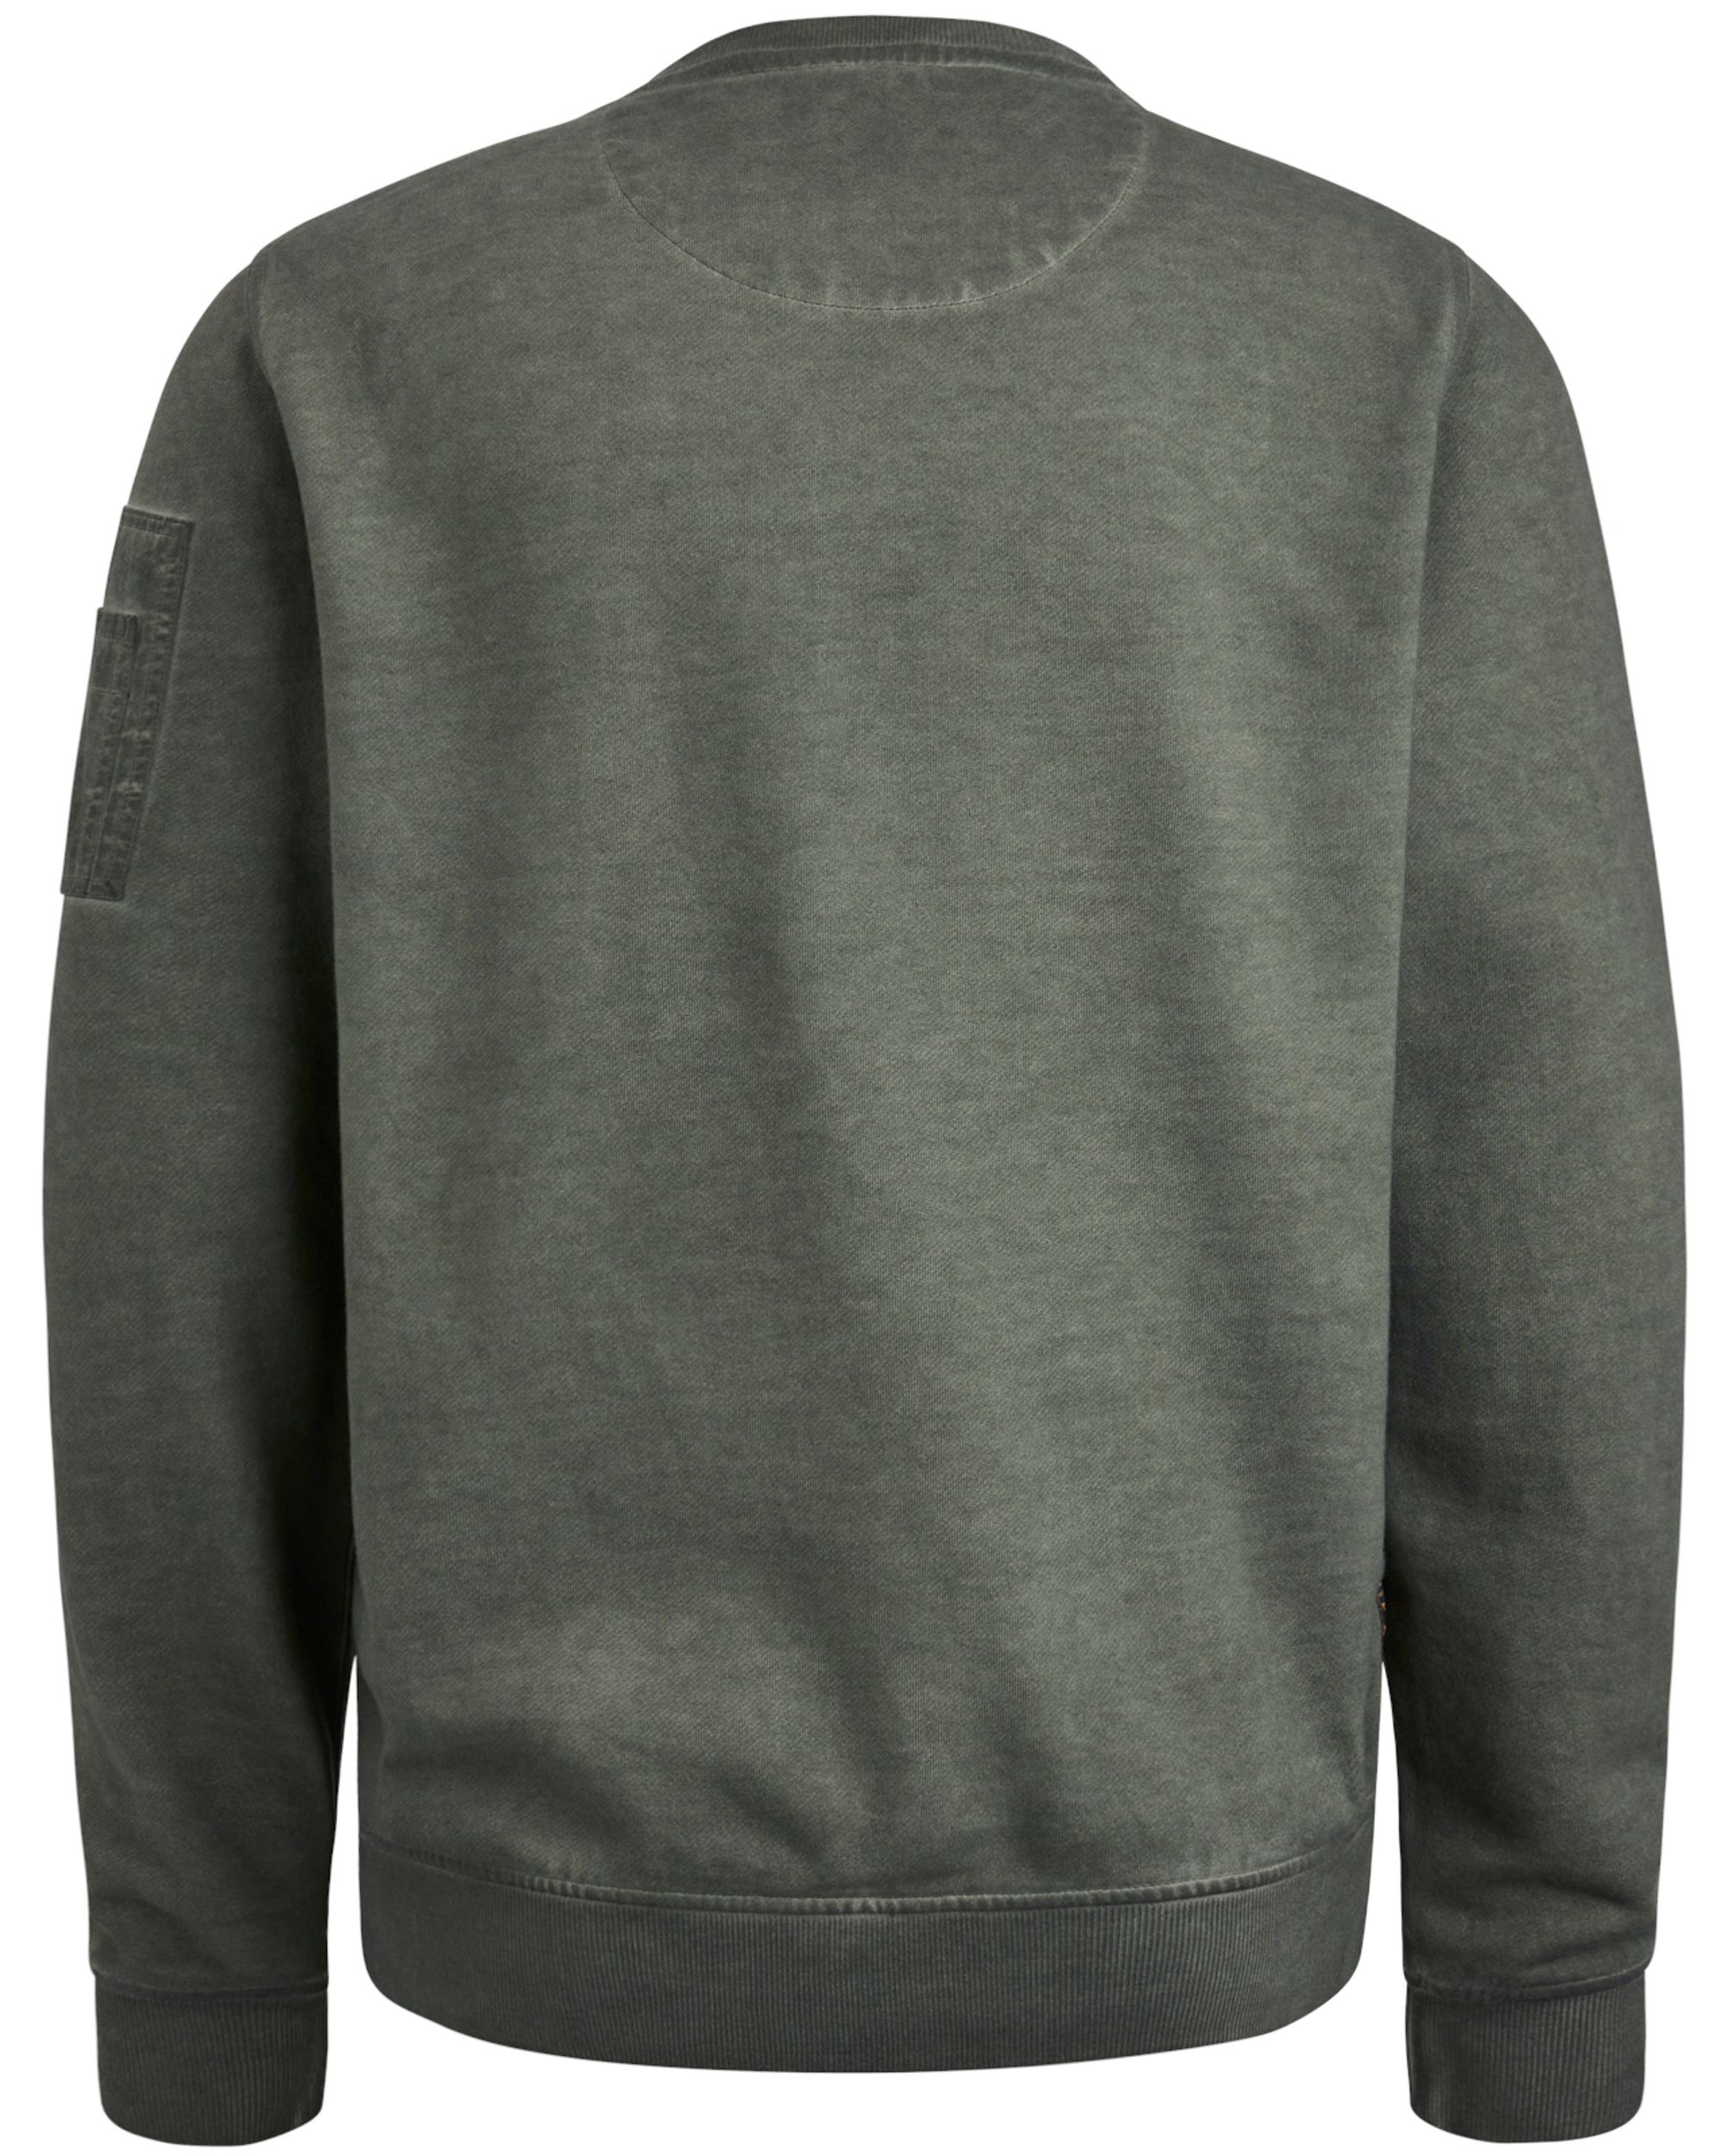 PME Legend Sweater Groen 092987-001-L